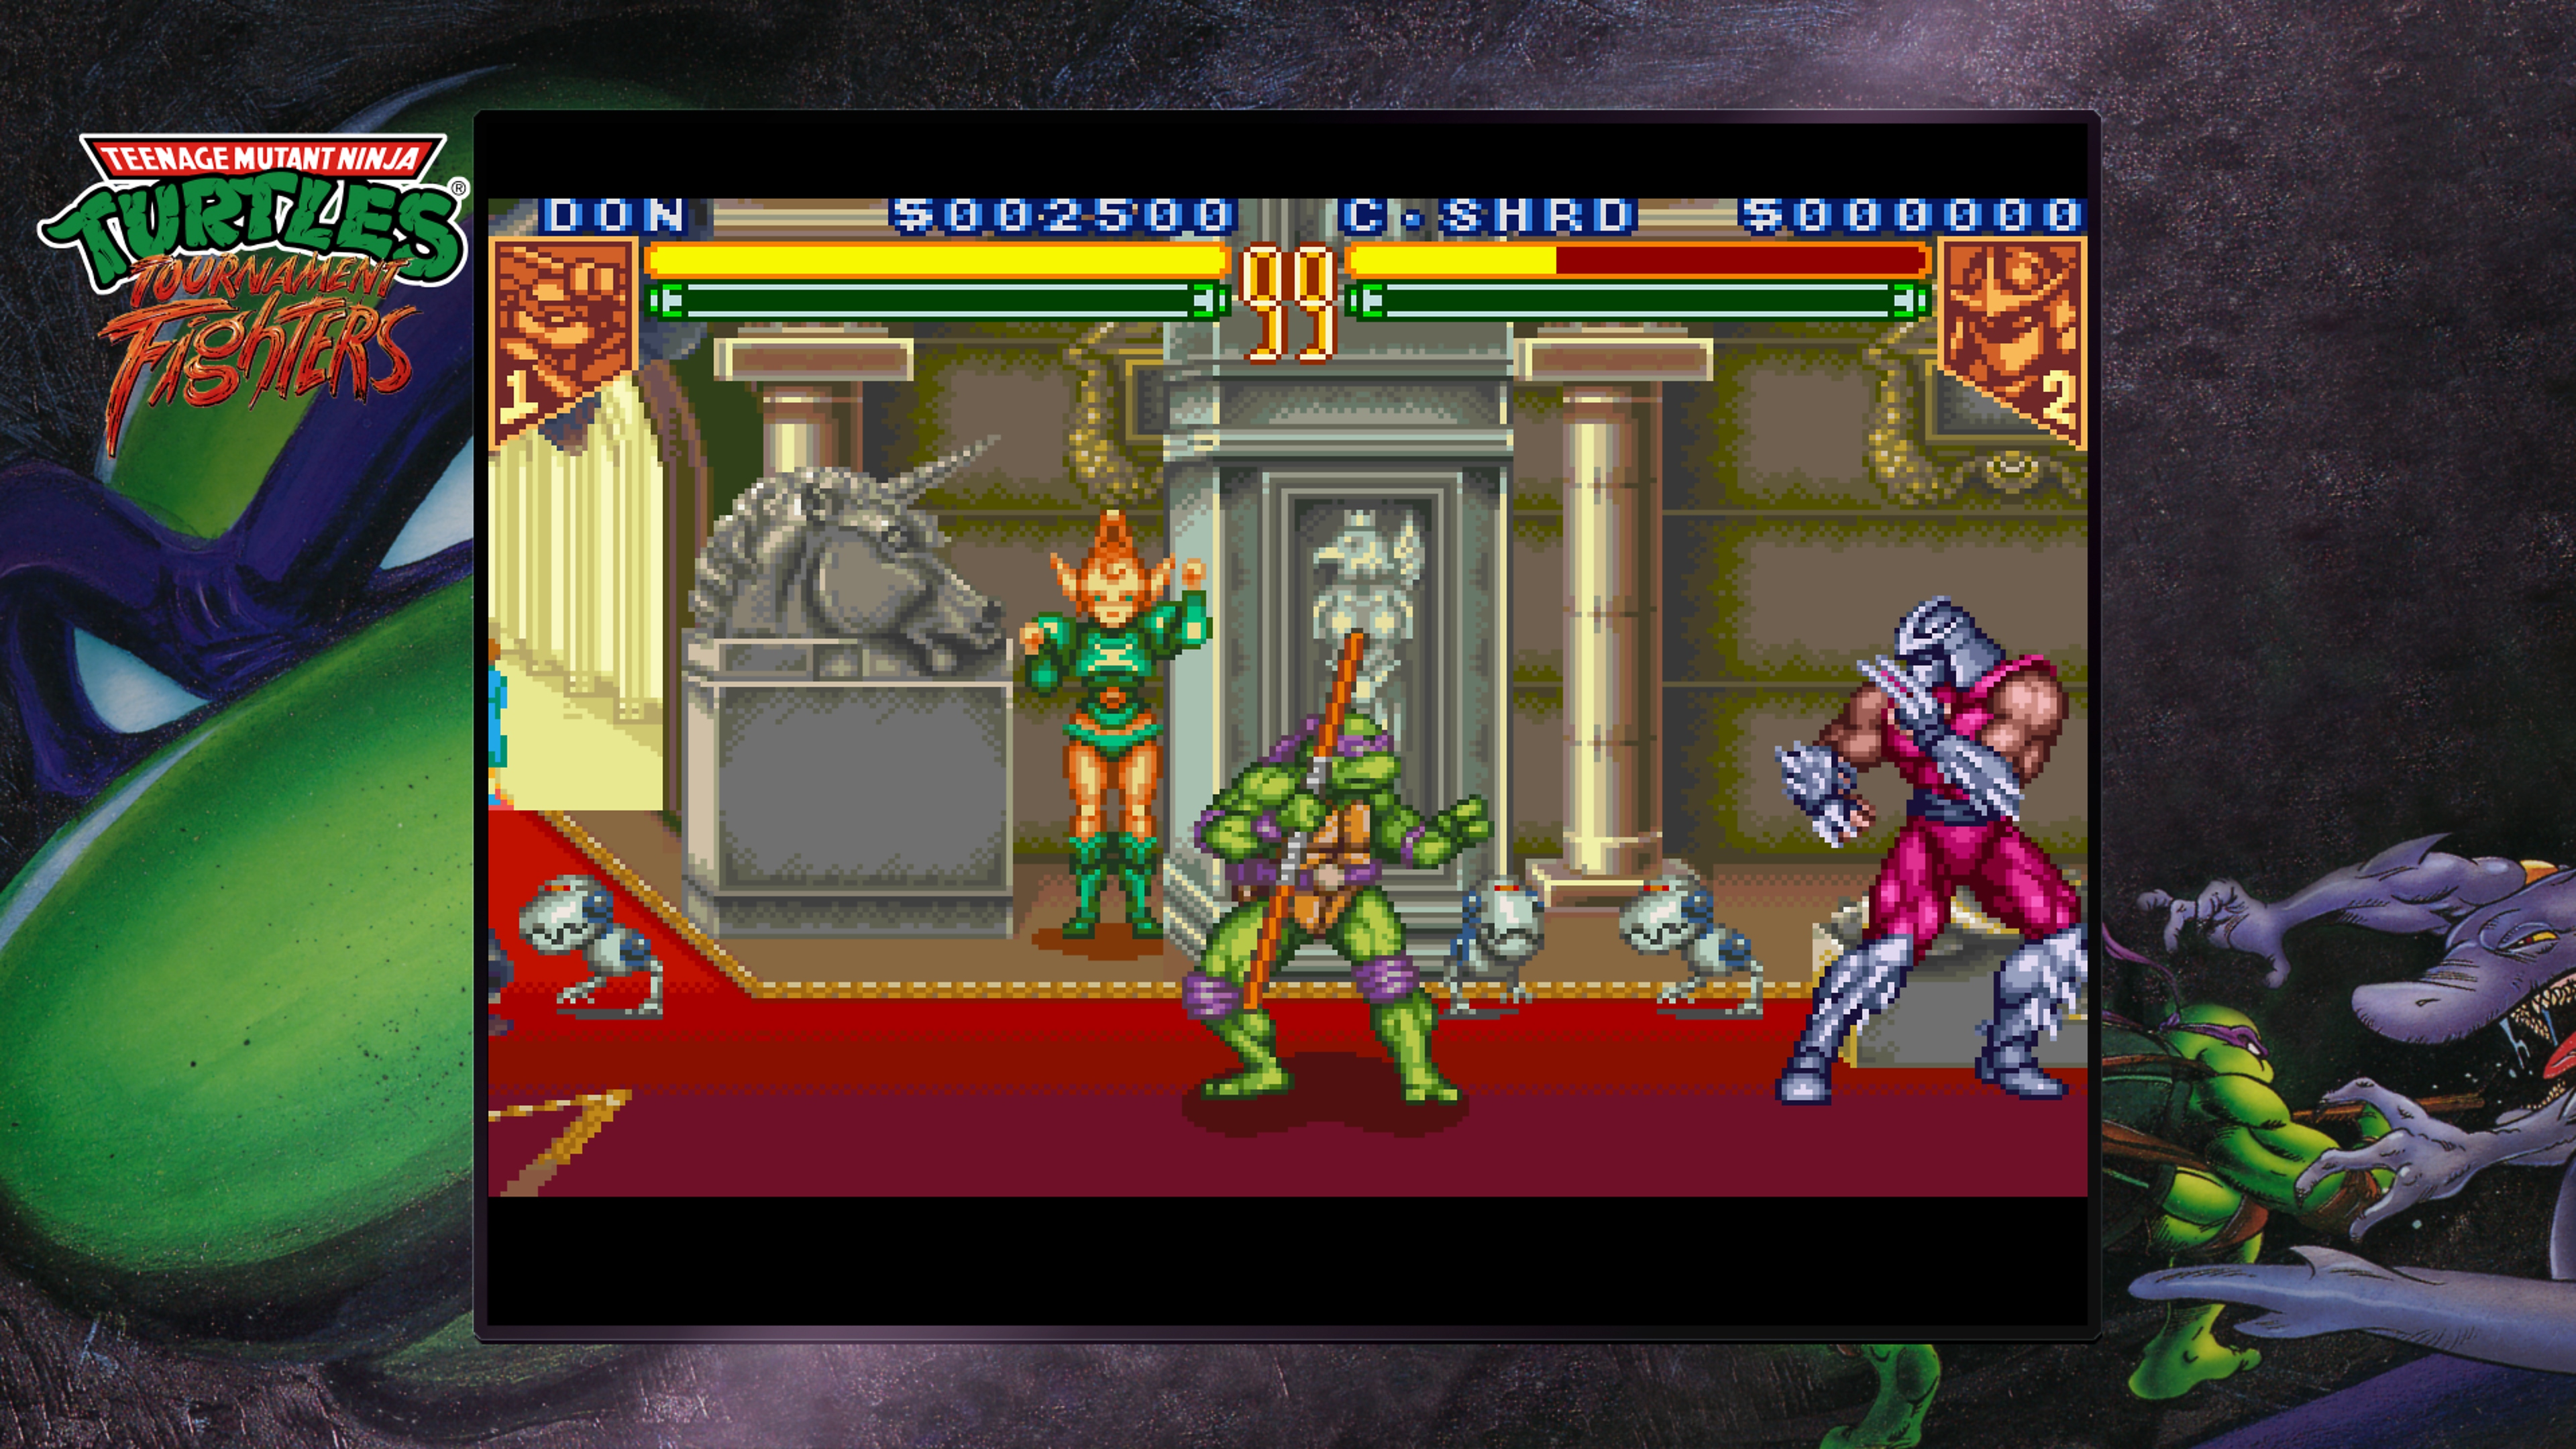 Teenage Mutant Ninja Turtles Collection - Tournament Fighters - Istantanea della schermata con Donatello che combatte contro Shredder